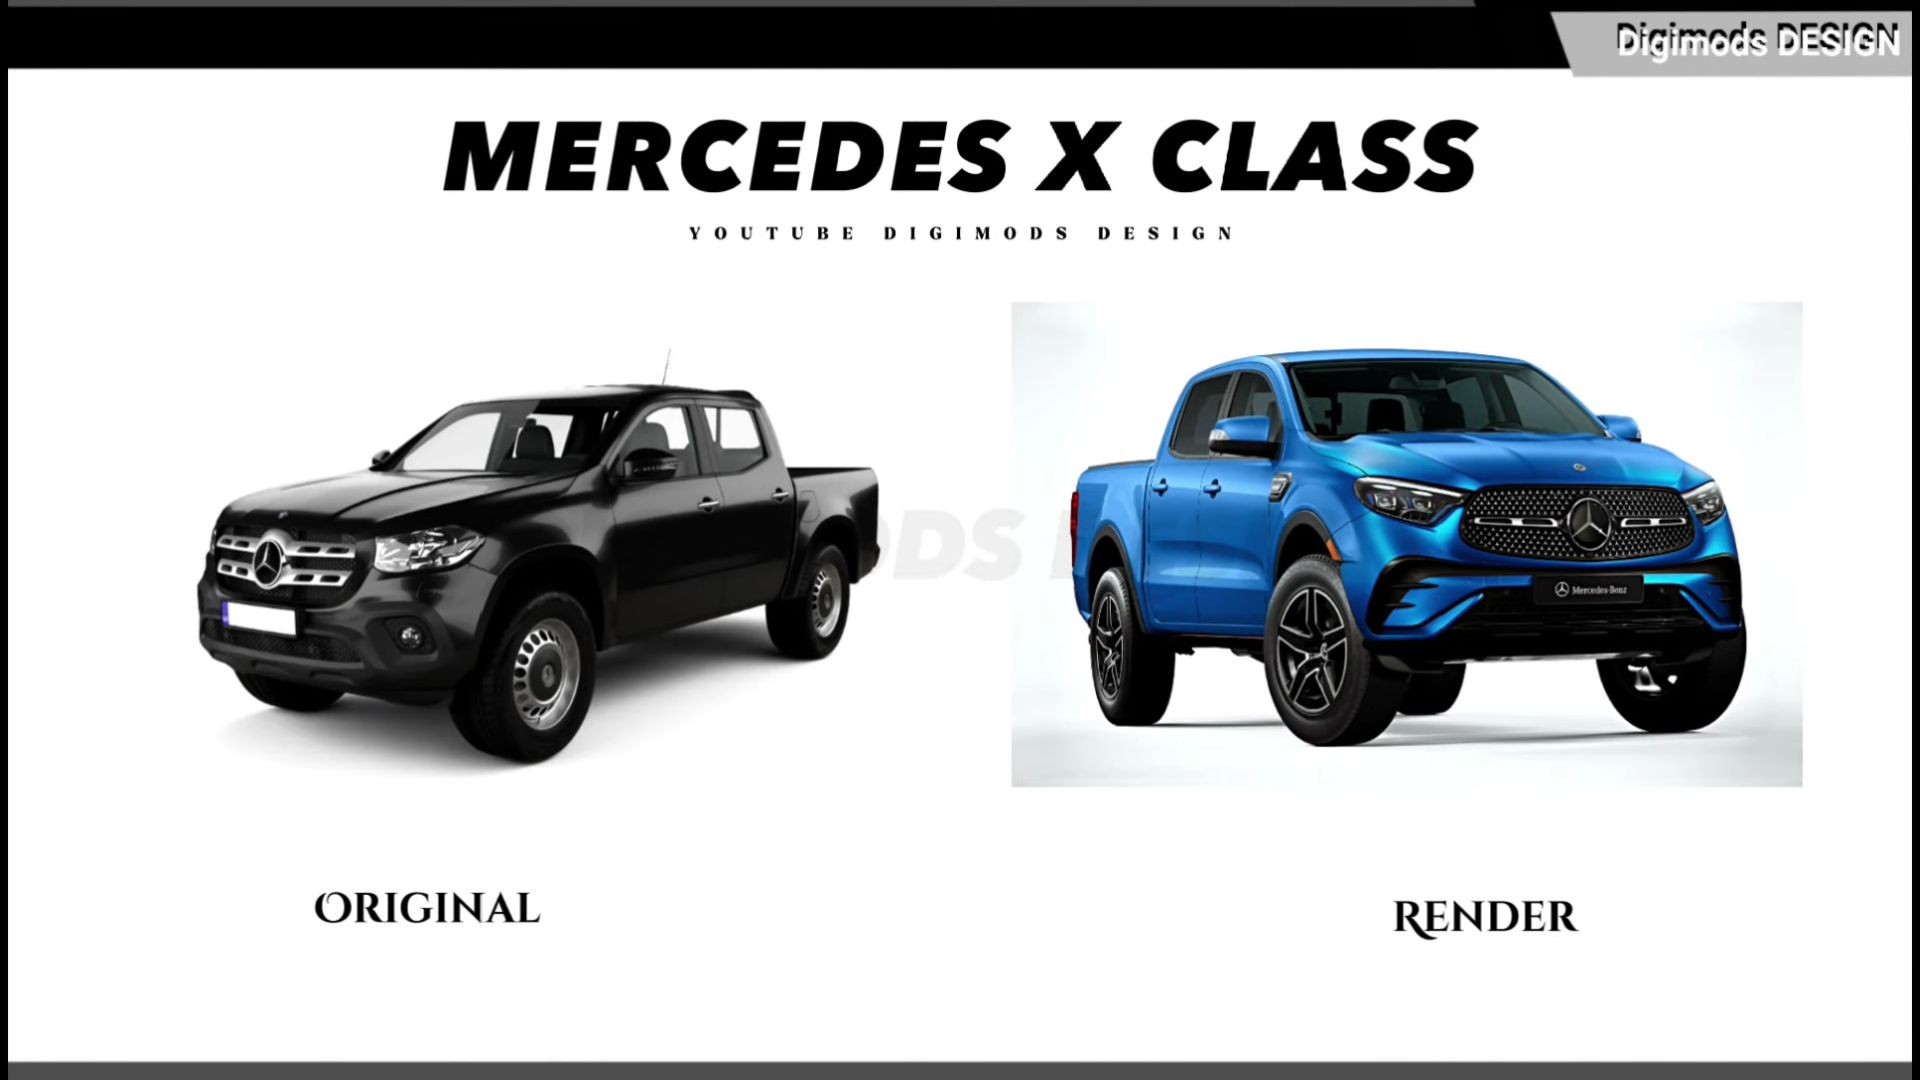 Mercedes Benz Class X Segunda Geração / Foto reprodução / Digimods Design